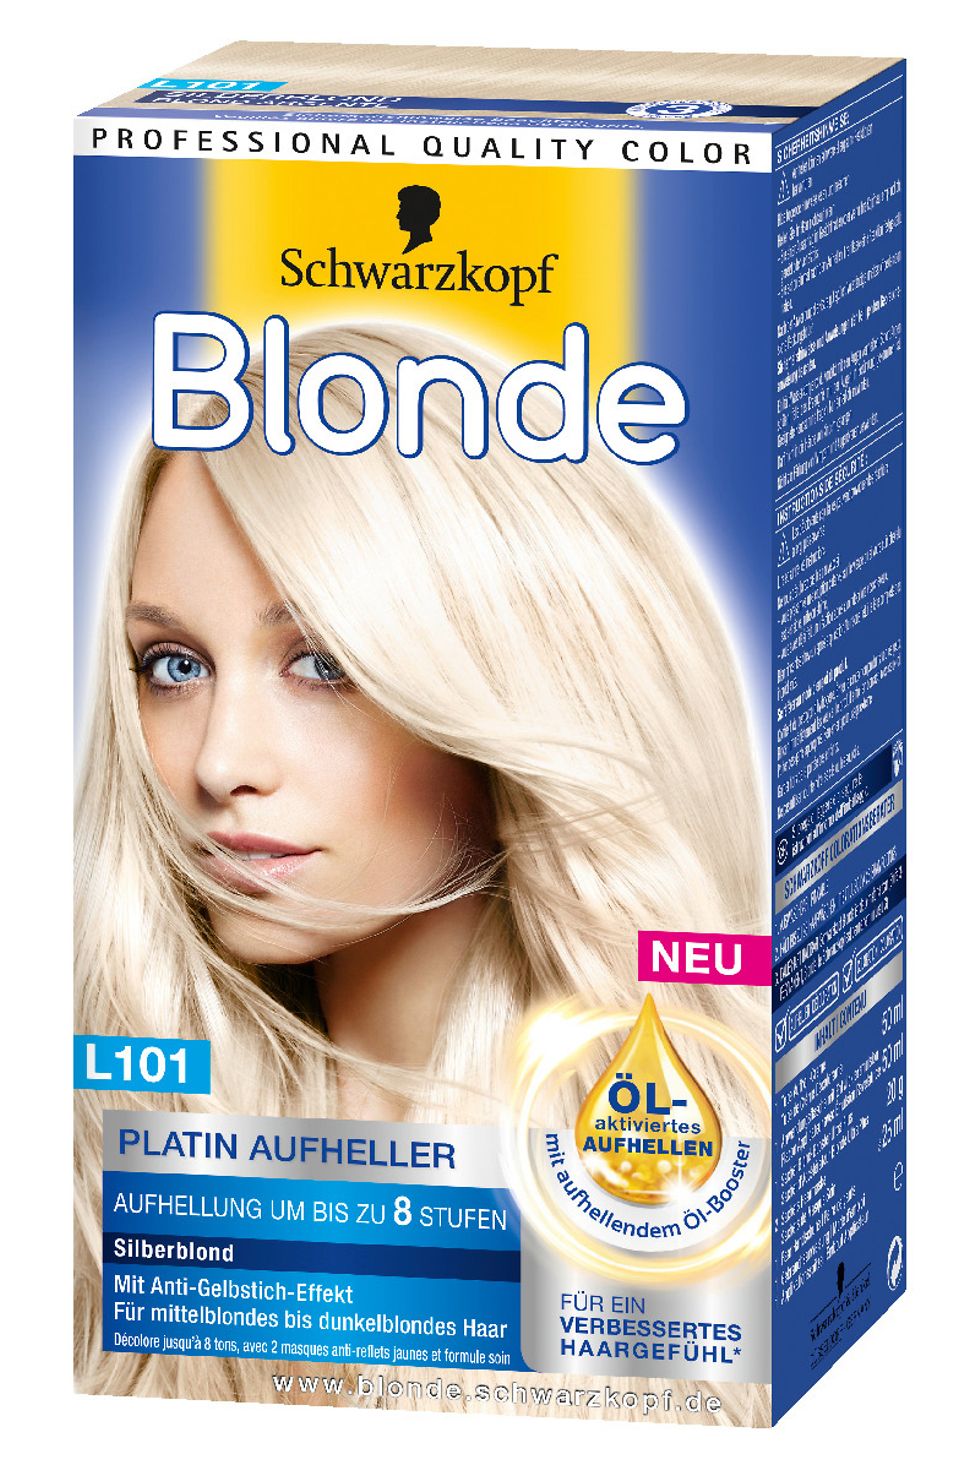 Blonde L101 Platin Aufheller Silberblond für mittelblondes bis dunkelblondes Haar um bis zu 8 Stufe